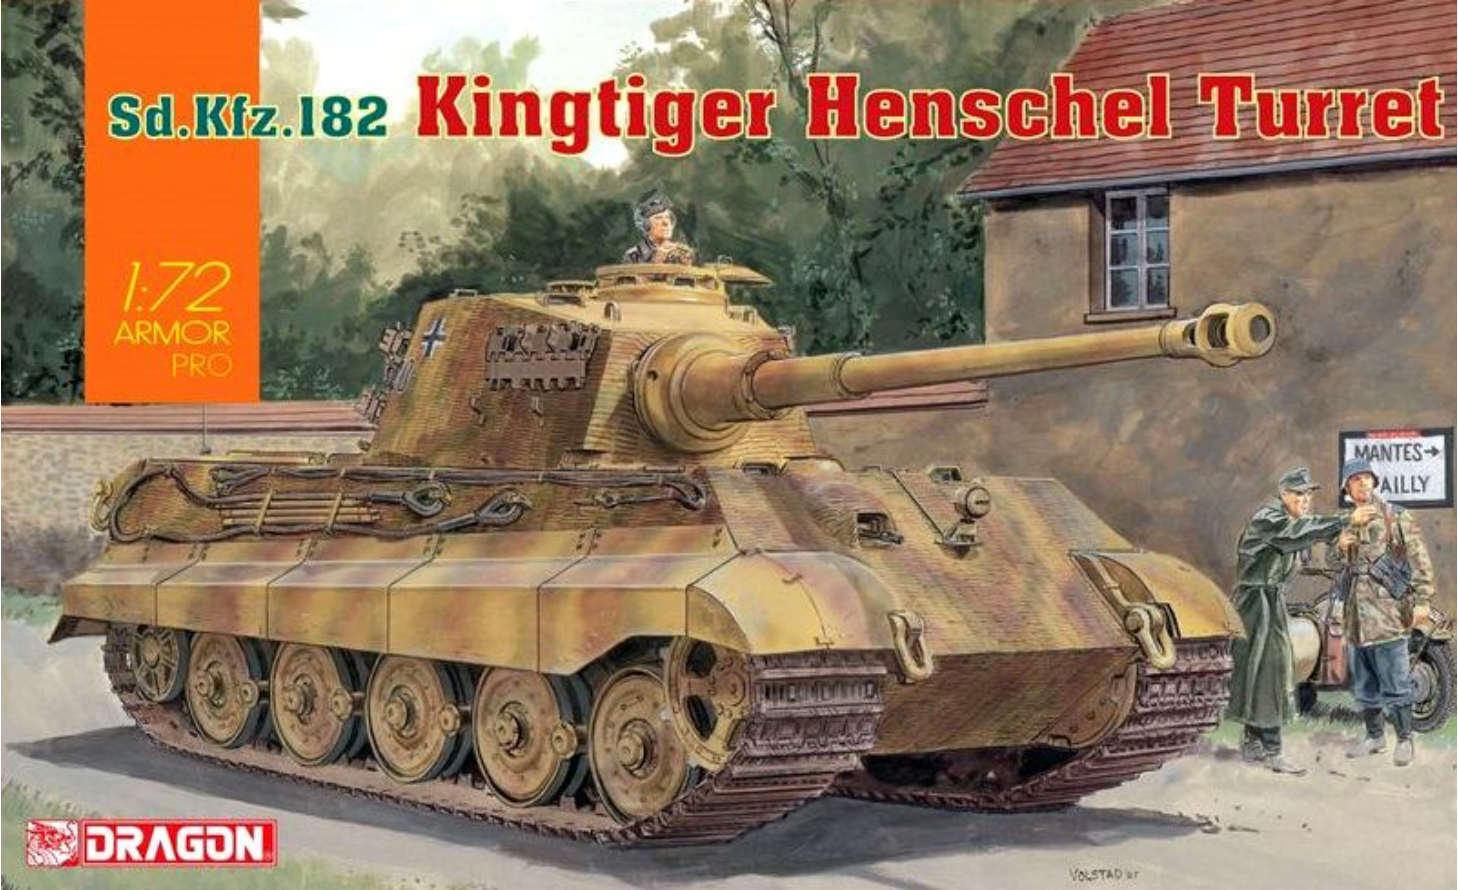 DR7558 - 1/72 King Tiger Henschel